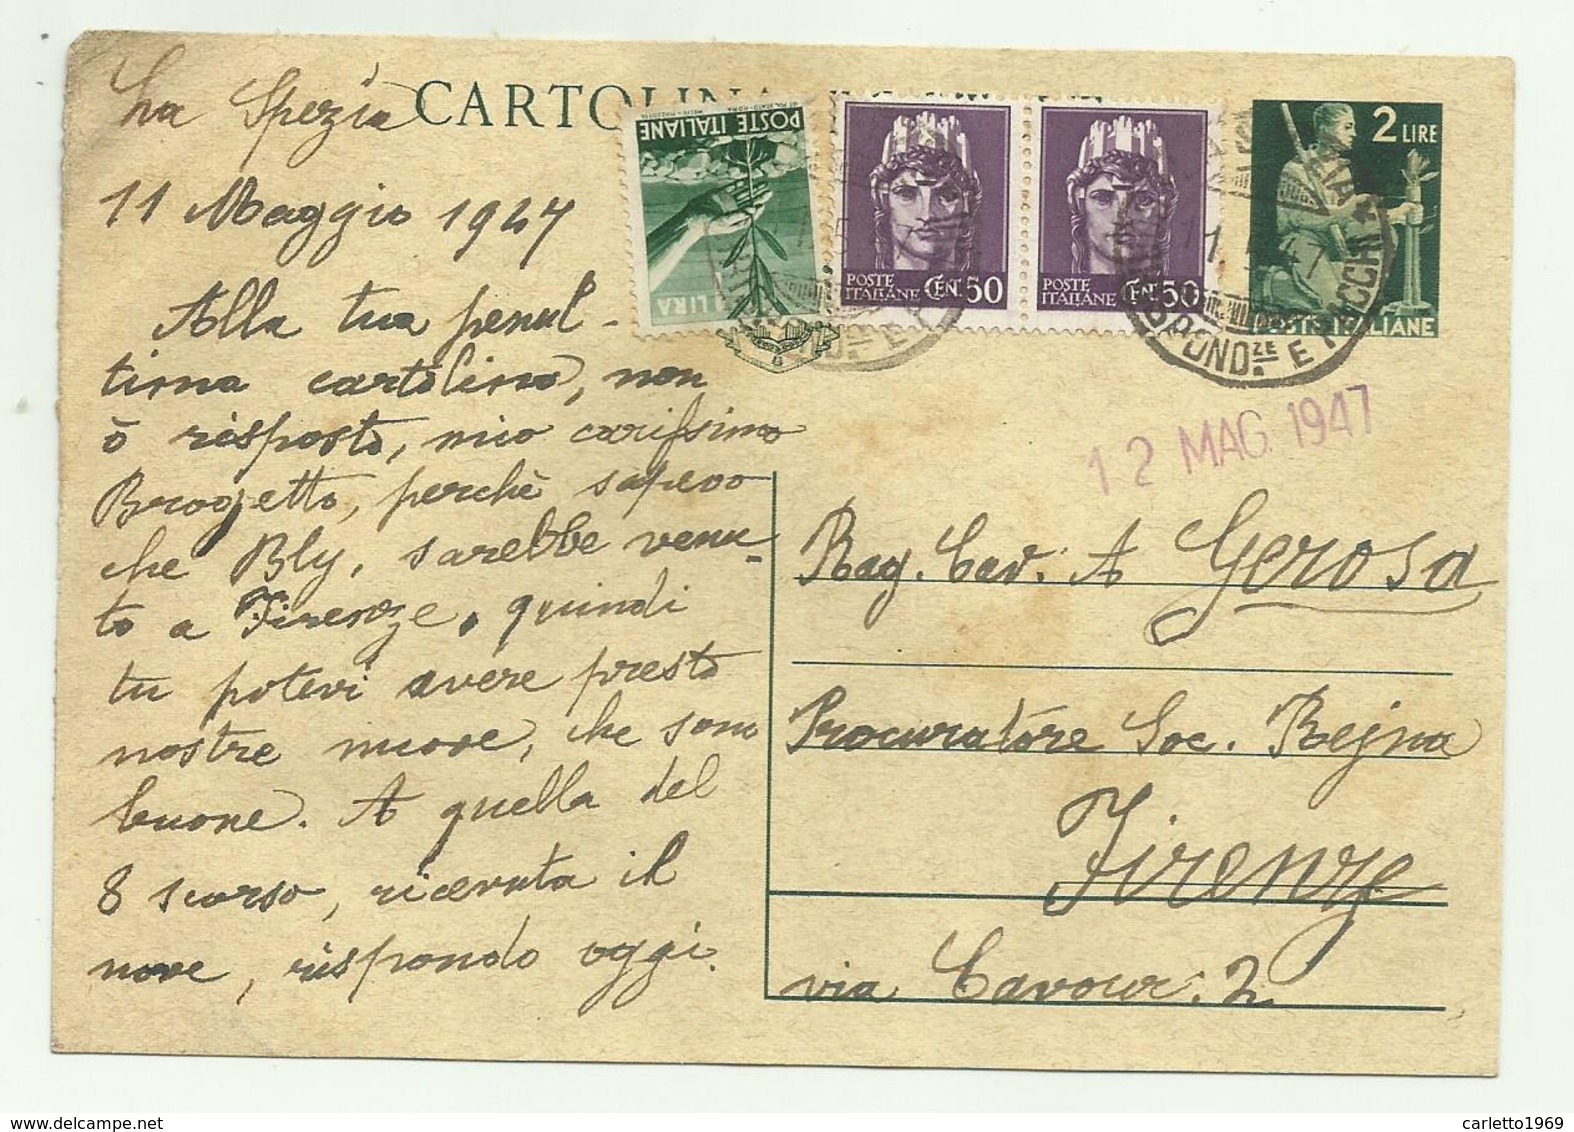 CARTOLINA POSTALE LIRE 2  CON AGGIUNTA DI 1 LIRA E 2 DA CENT. 50 - 1947  FG - Marcophilie